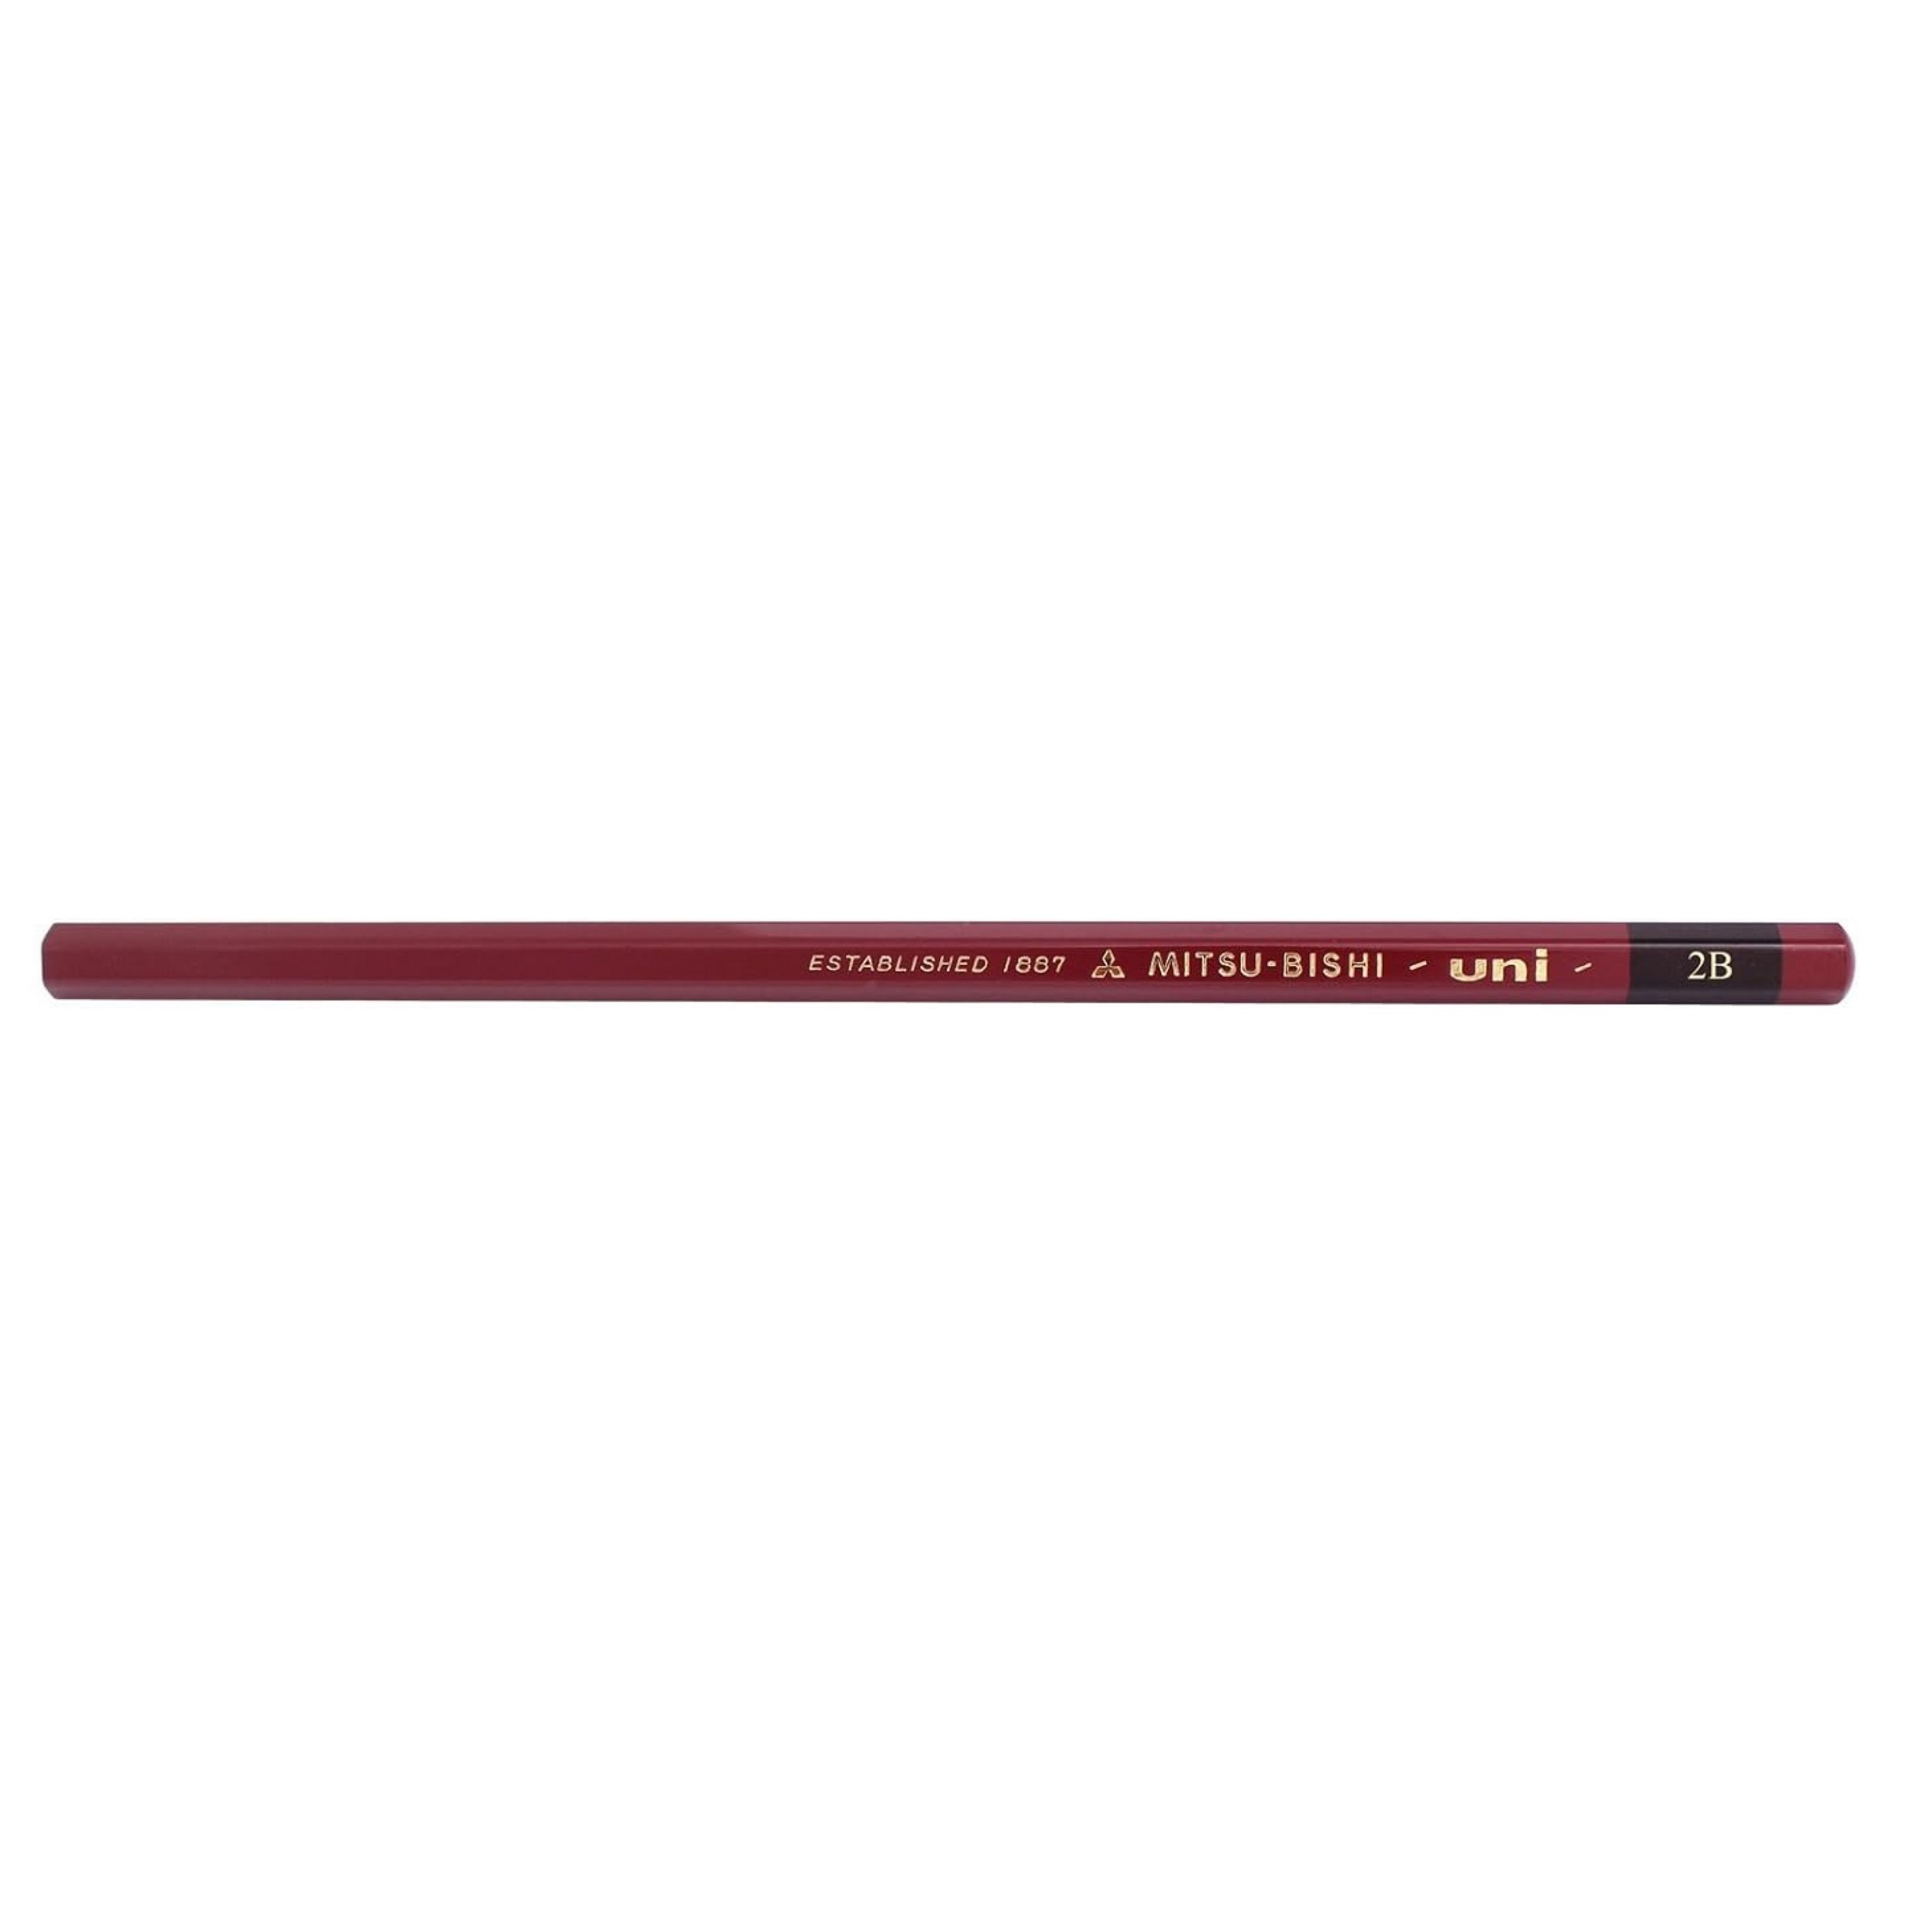  مداد طراحی میتسوبیشی مدل 2B